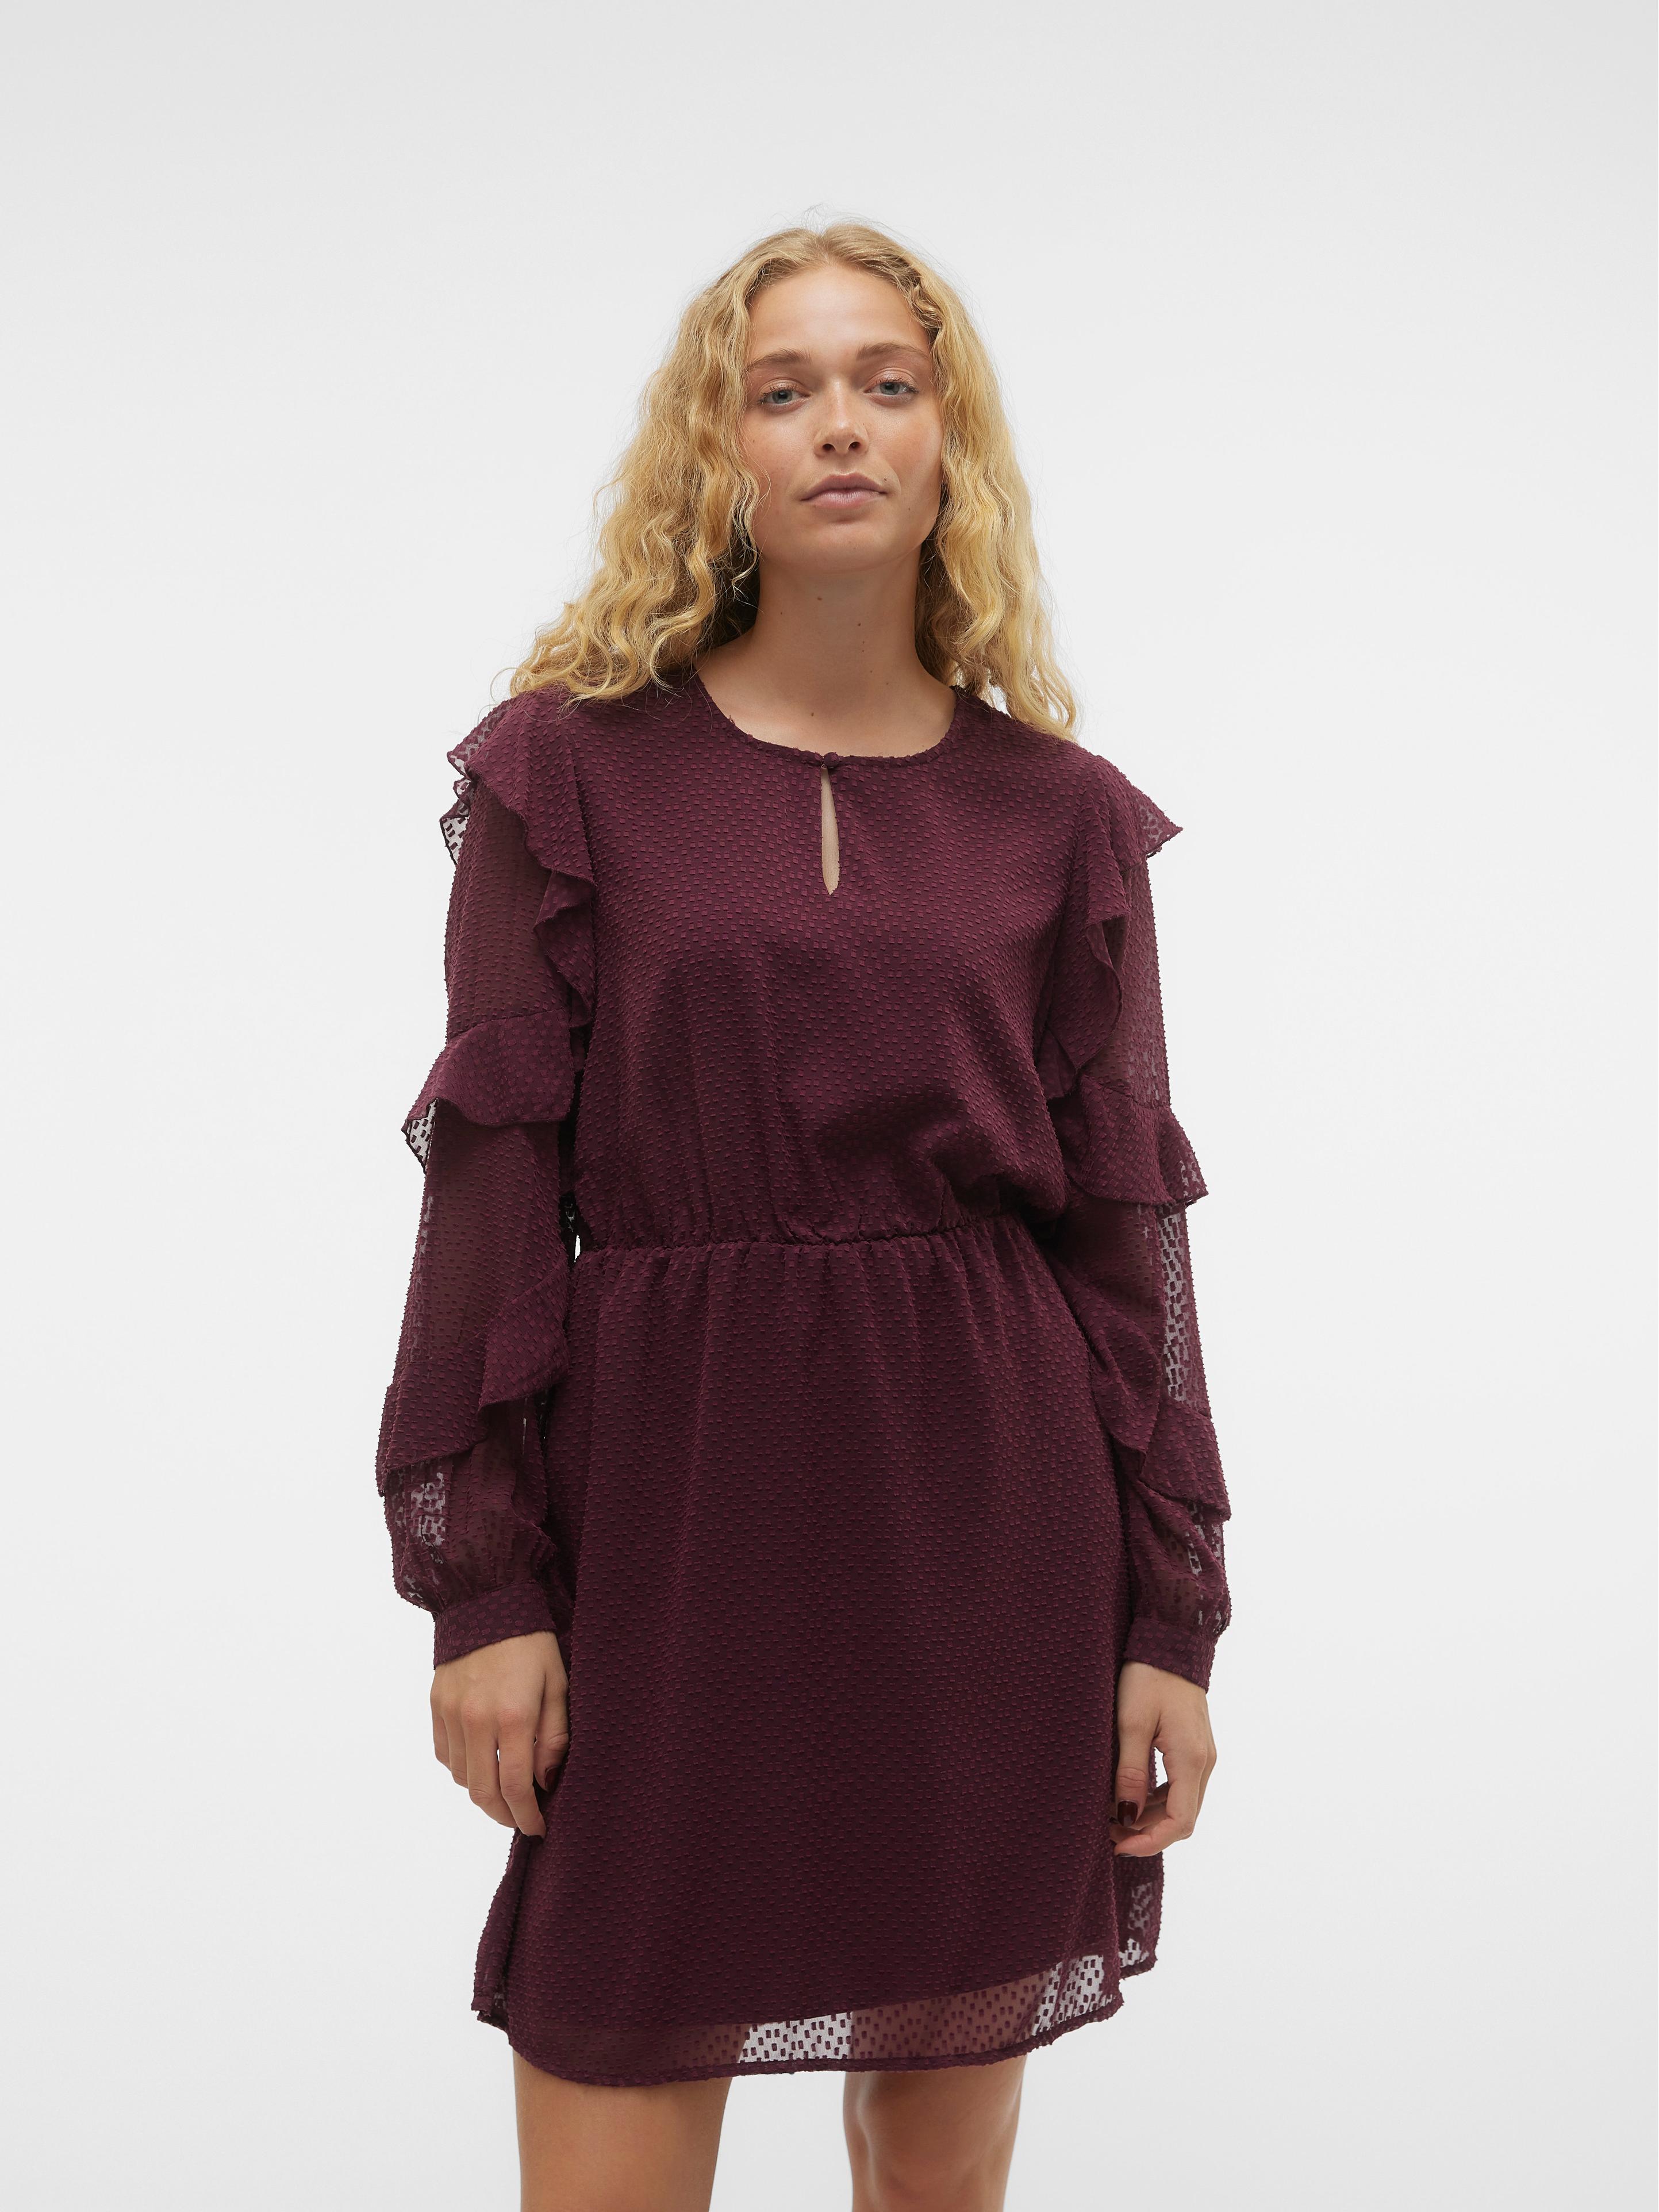 Tilbud: VMLONA Kort kjole kr 349,98 på Vero Moda